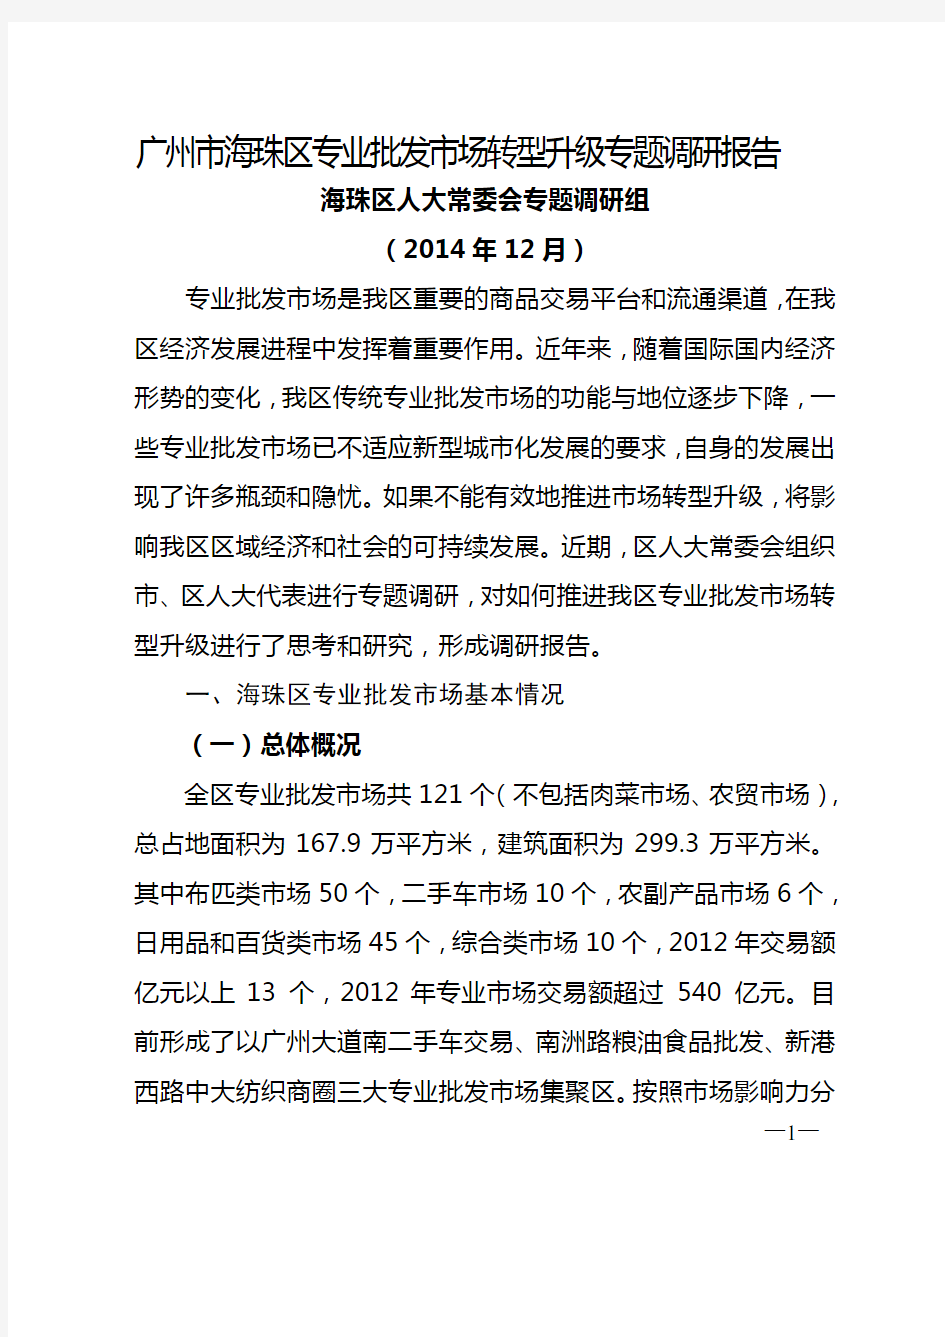 广州市海珠区专业批发市场转型升级专题调研报告